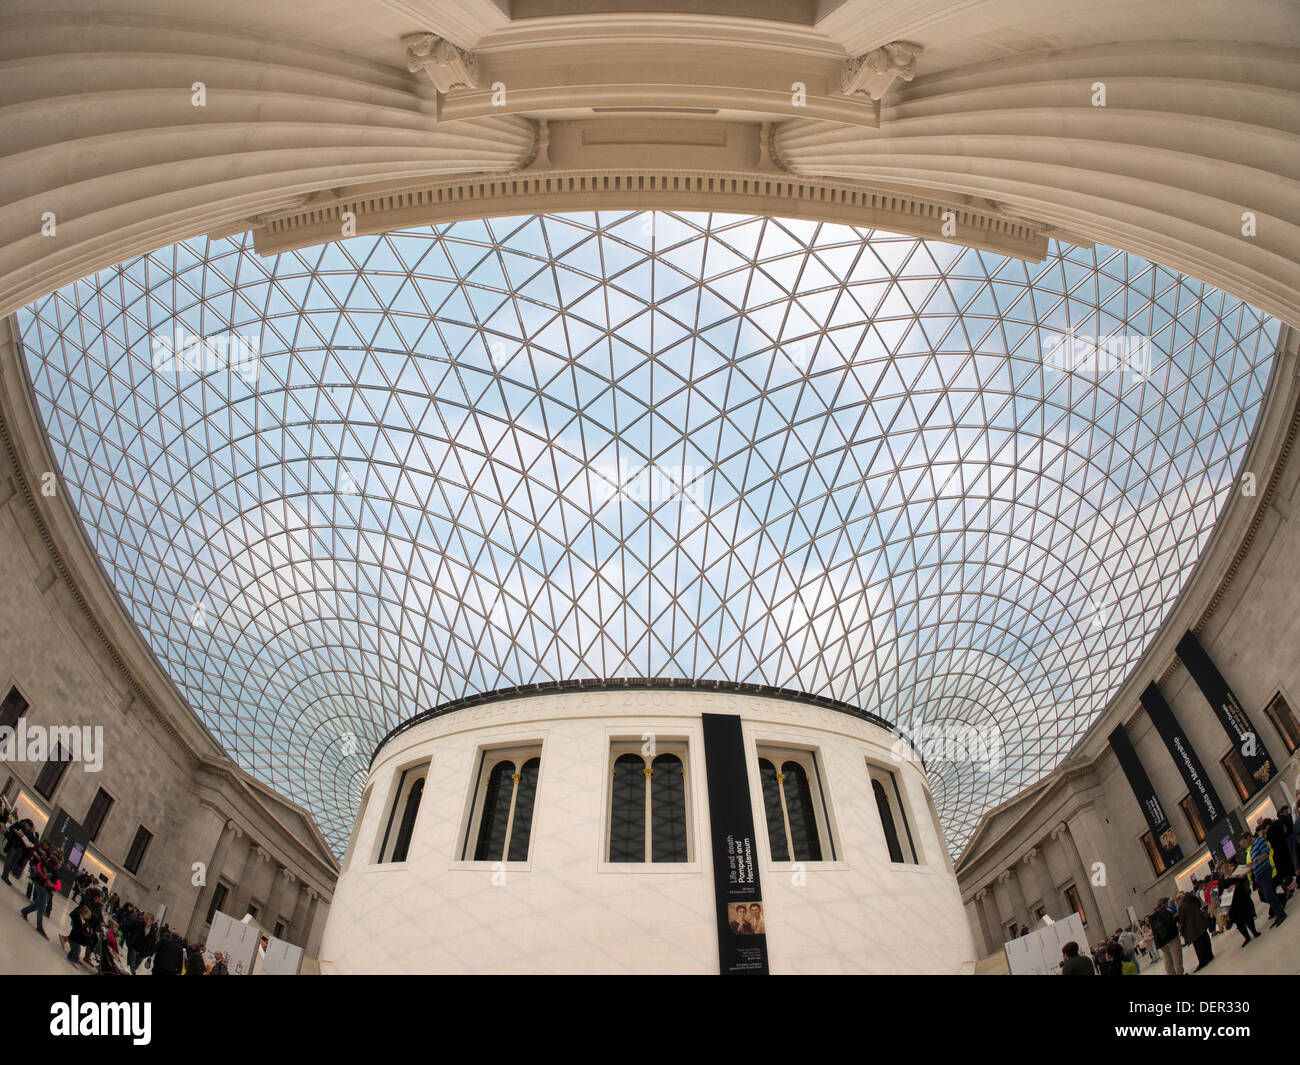 The British Museum - Queen Elizabeth II Great Court Stock Photo